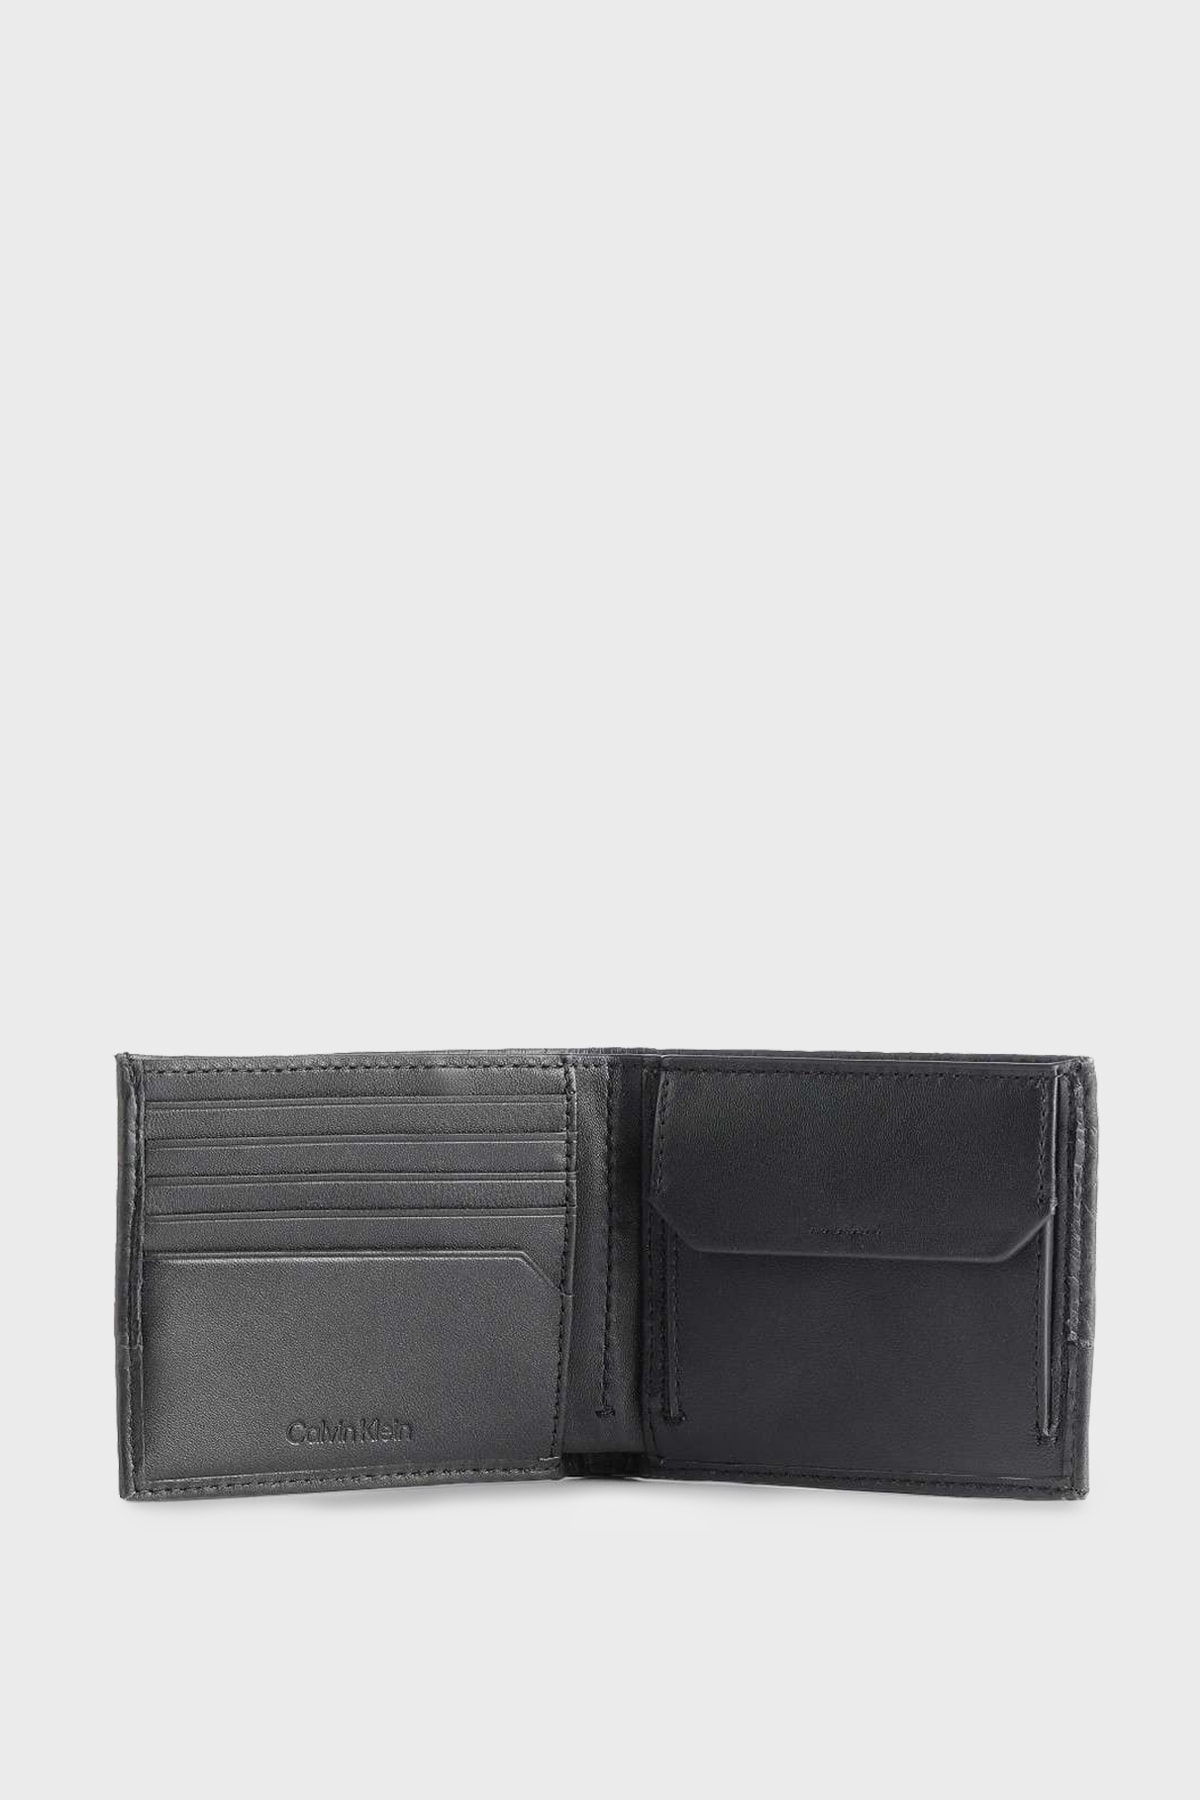 Calvin Klein Wallet - Black - With Slogan - Trendyol